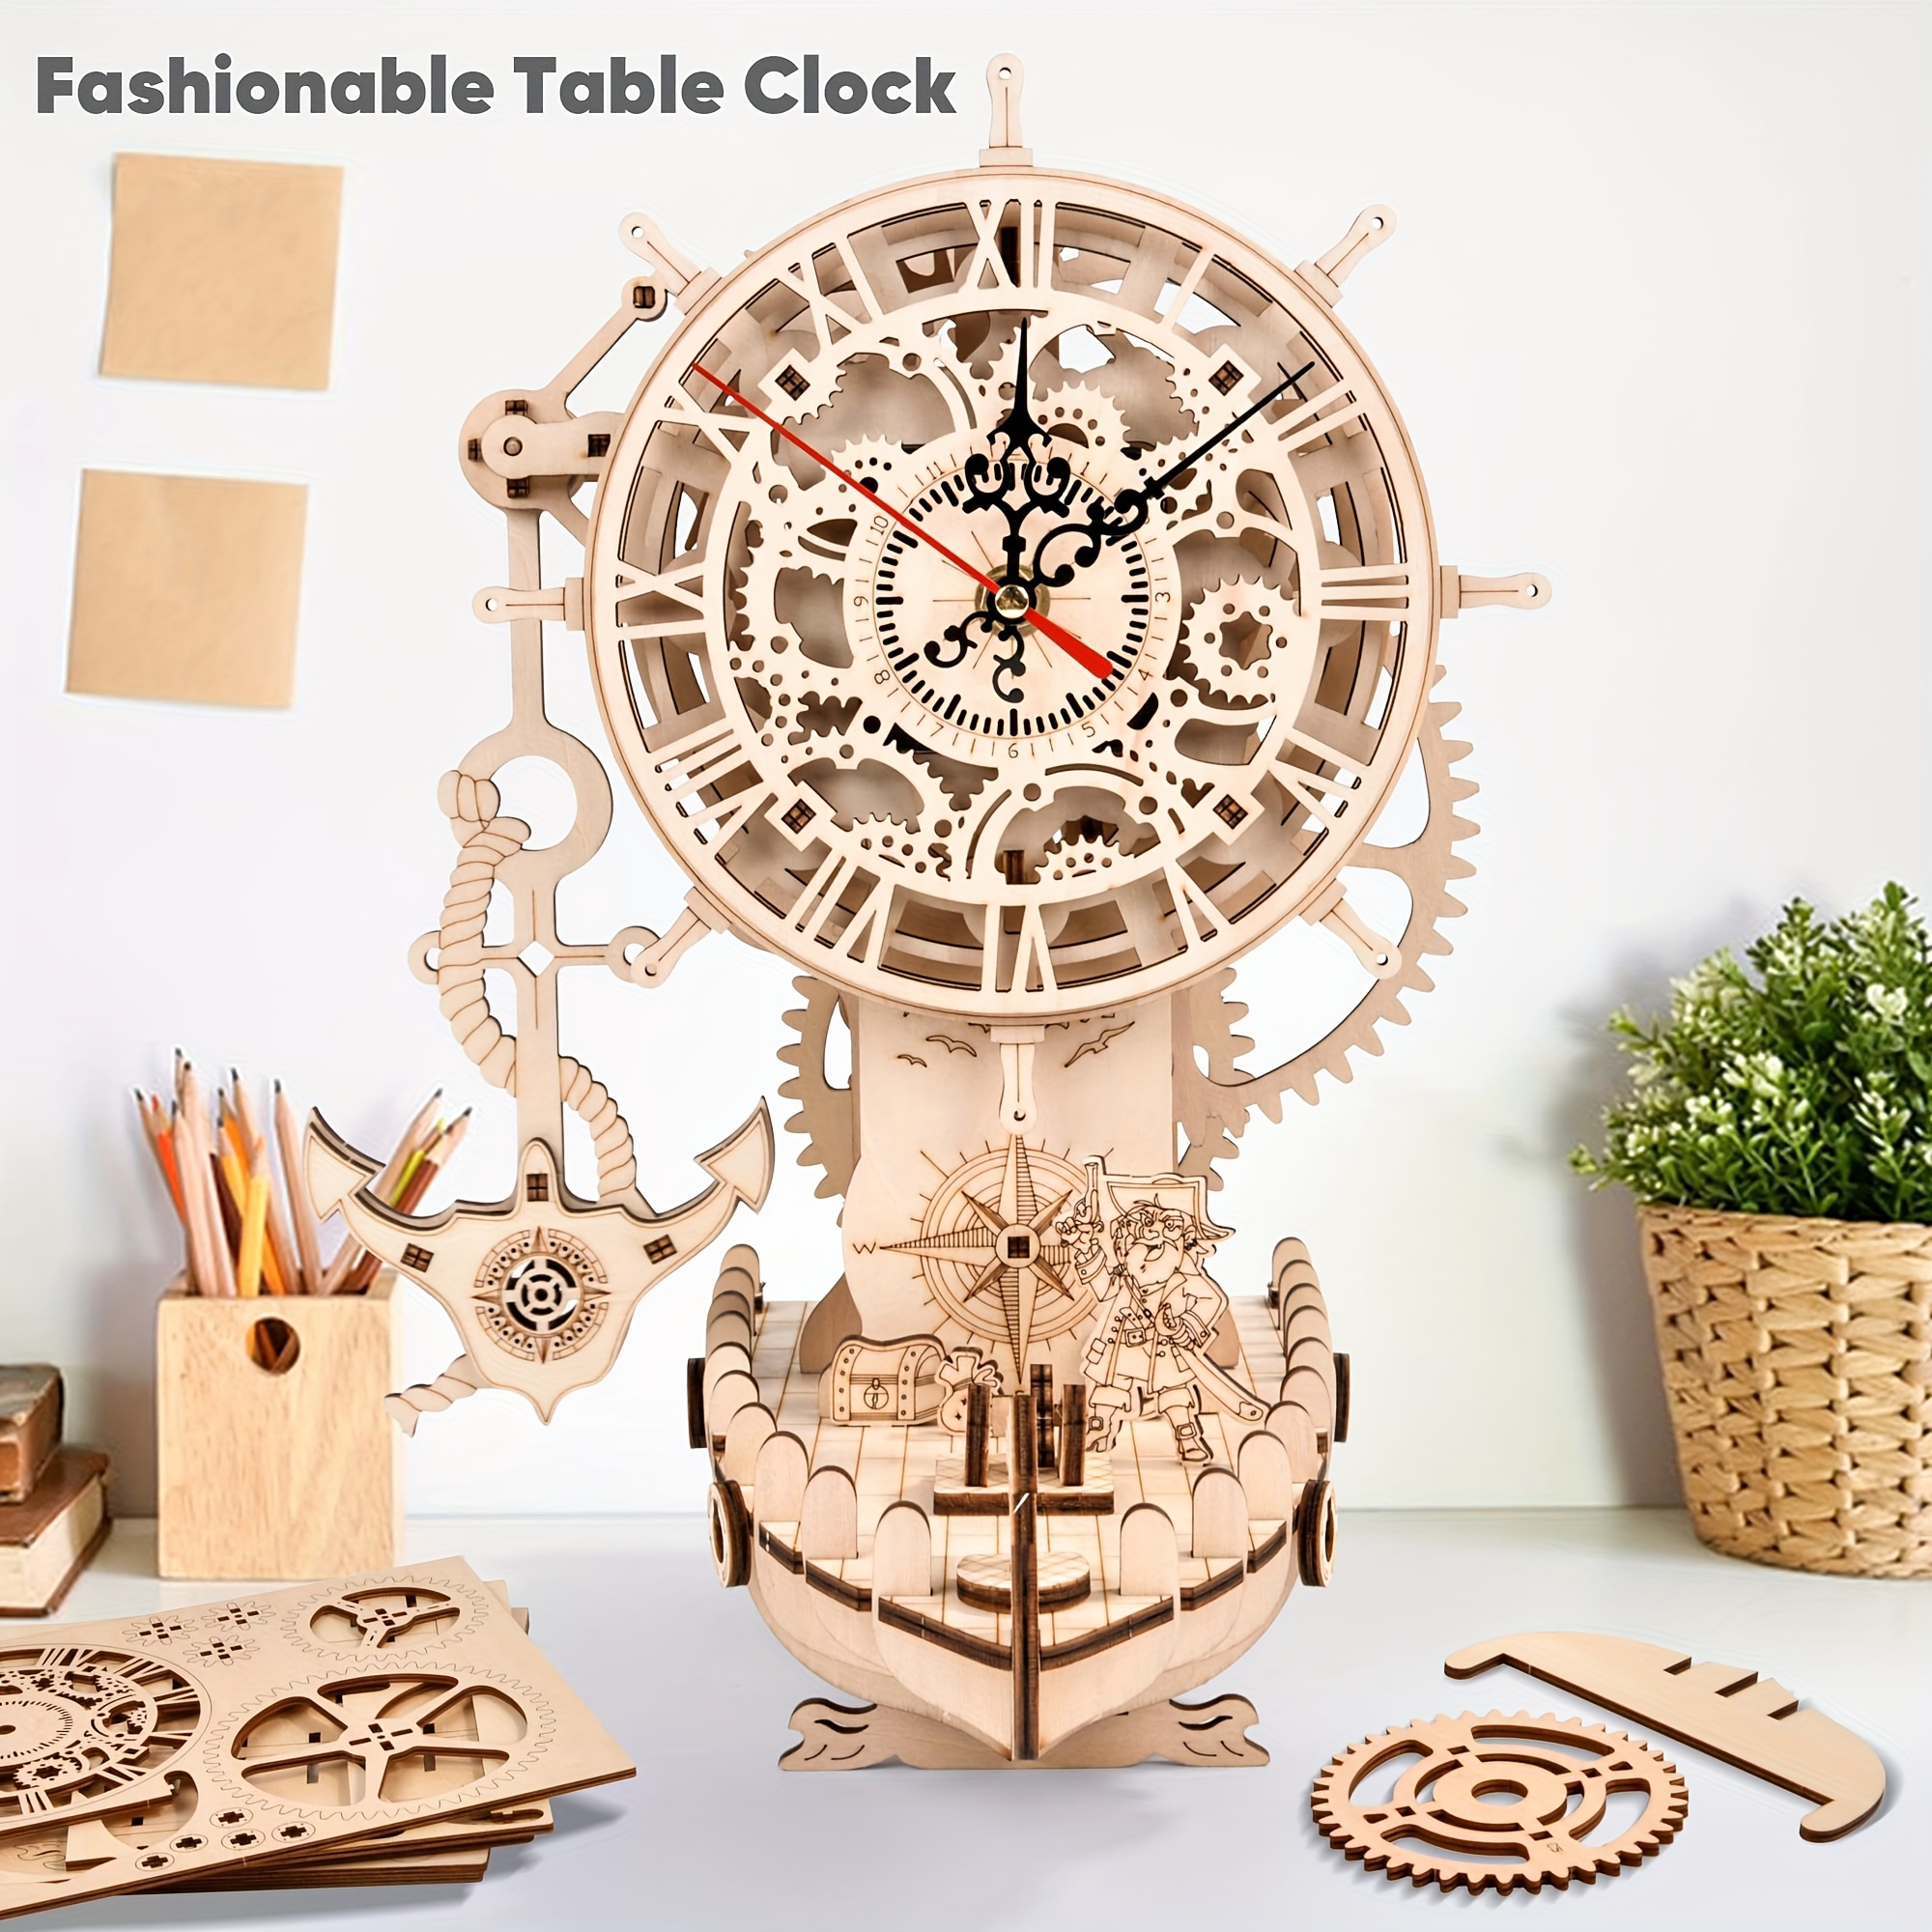 大人向けの海賊船時計 3D 木製パズル、DIY 3D パズル機械式時計キットを組み立てる大人向けの木製モデル、大人向けの時計作成キットのギフト。